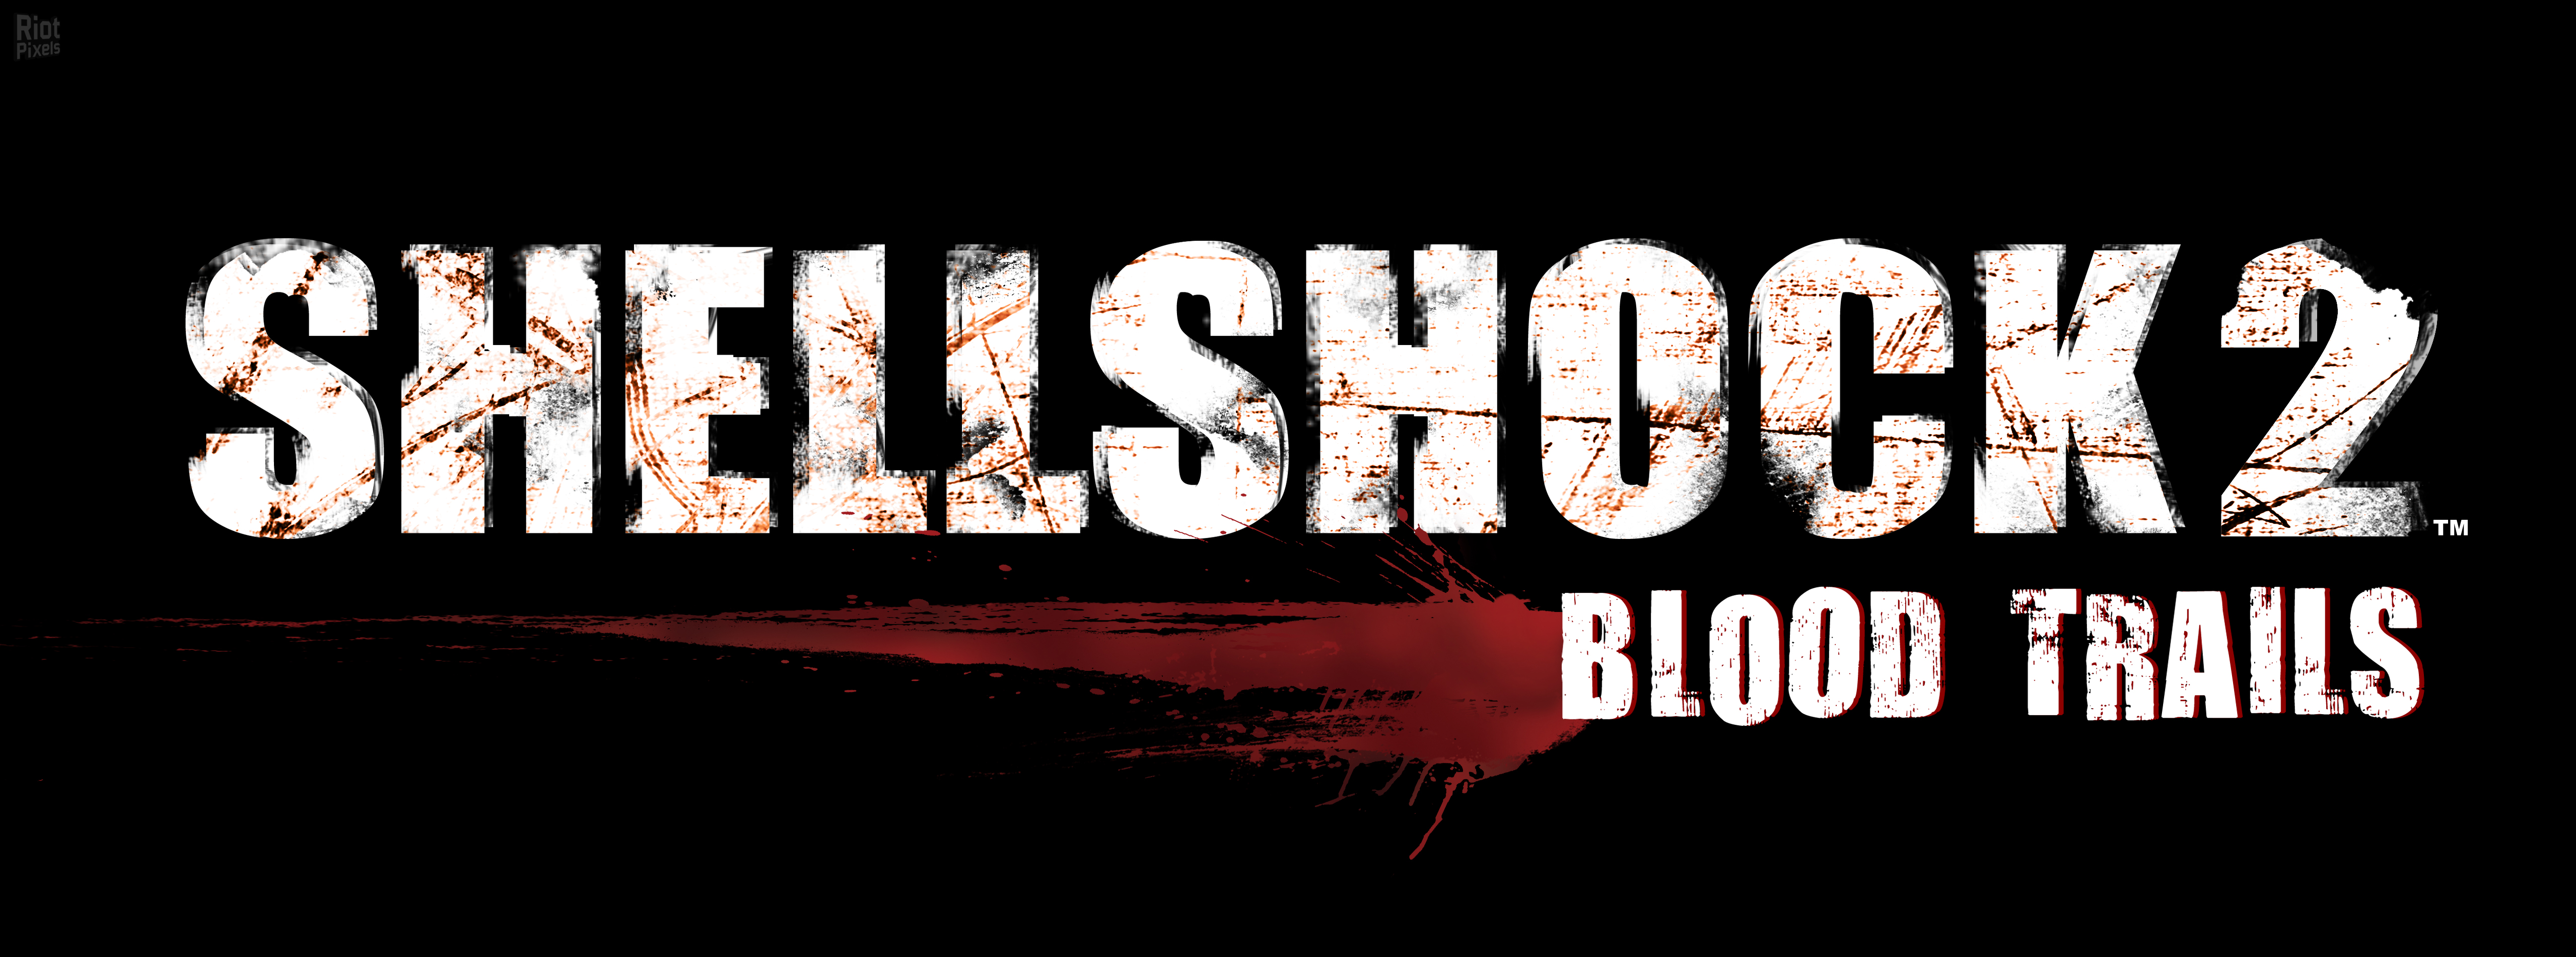 Shellshock 2: Blood Trails - Full Game